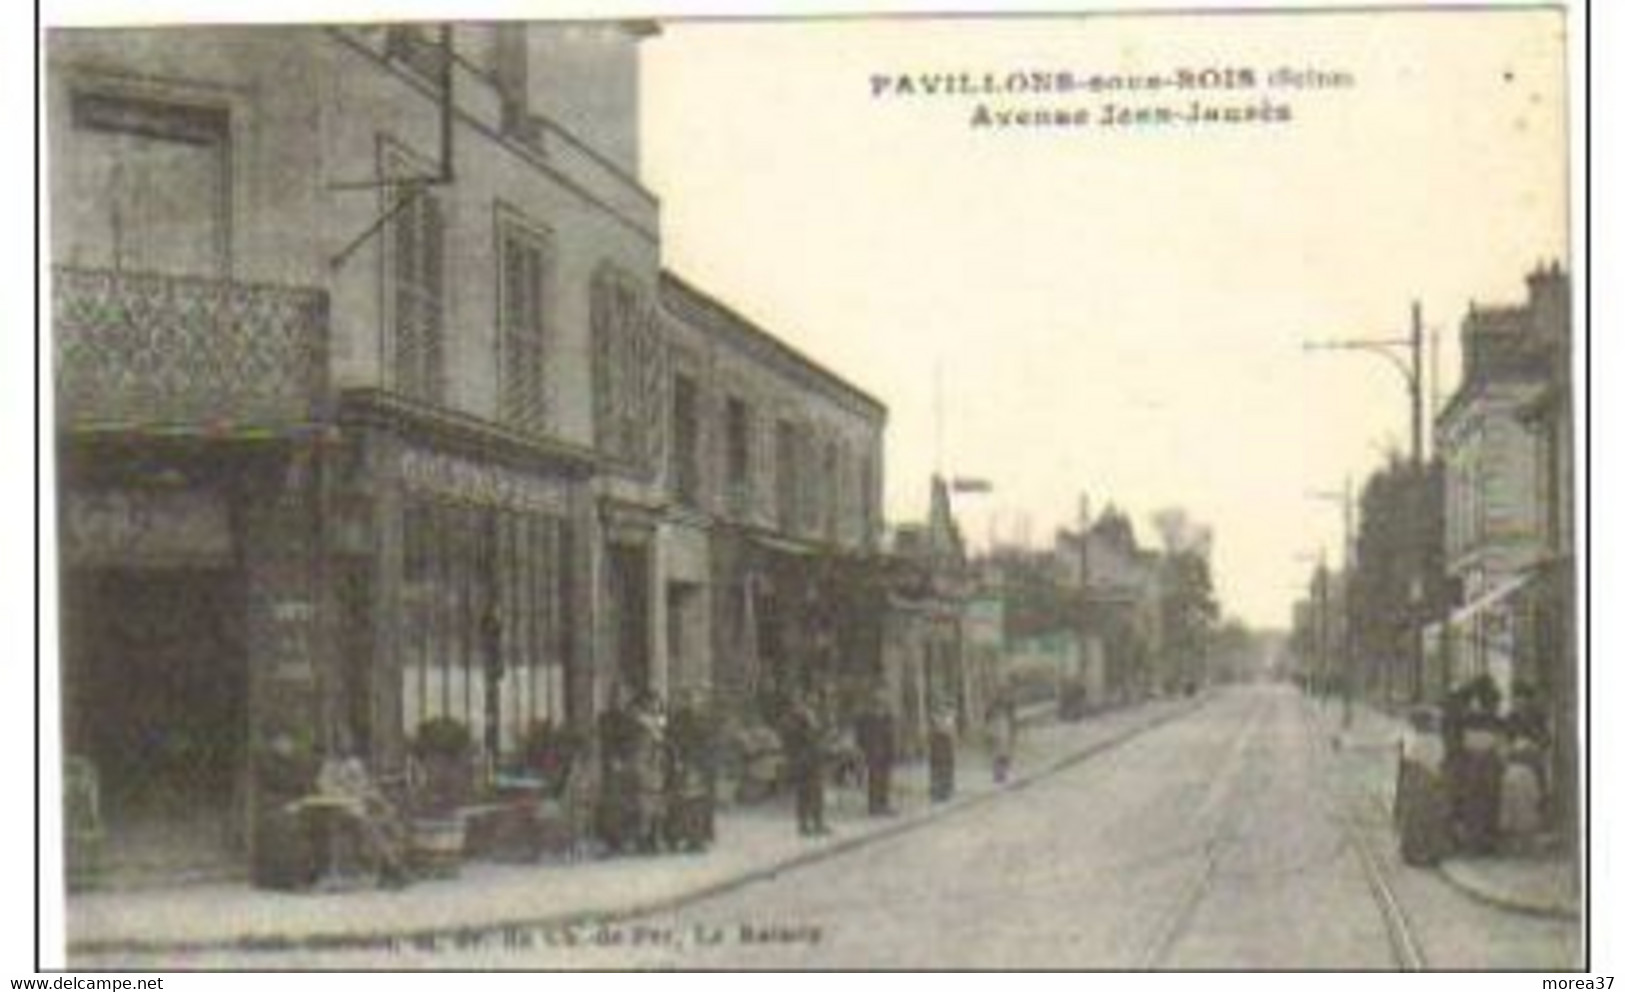 PAVILLONS SOUS BOIS Avenue Jean Jaures - Les Pavillons Sous Bois